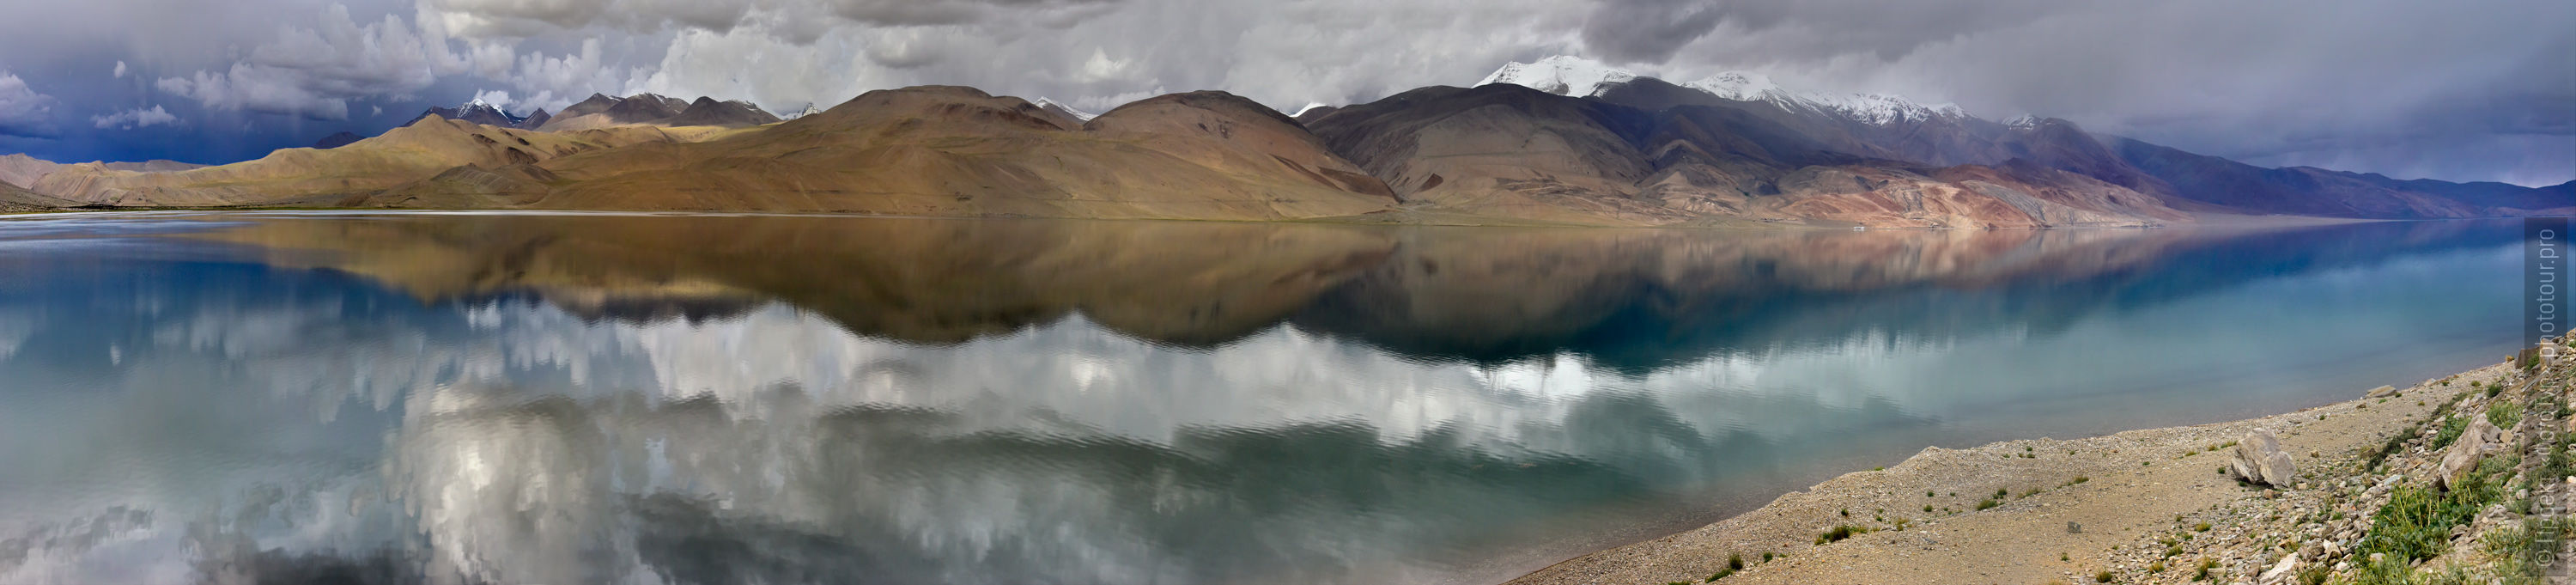 Перед грозой, озеро Цо Морири, фототур по Тибету с Проектом ФотоТур, 2015 год.